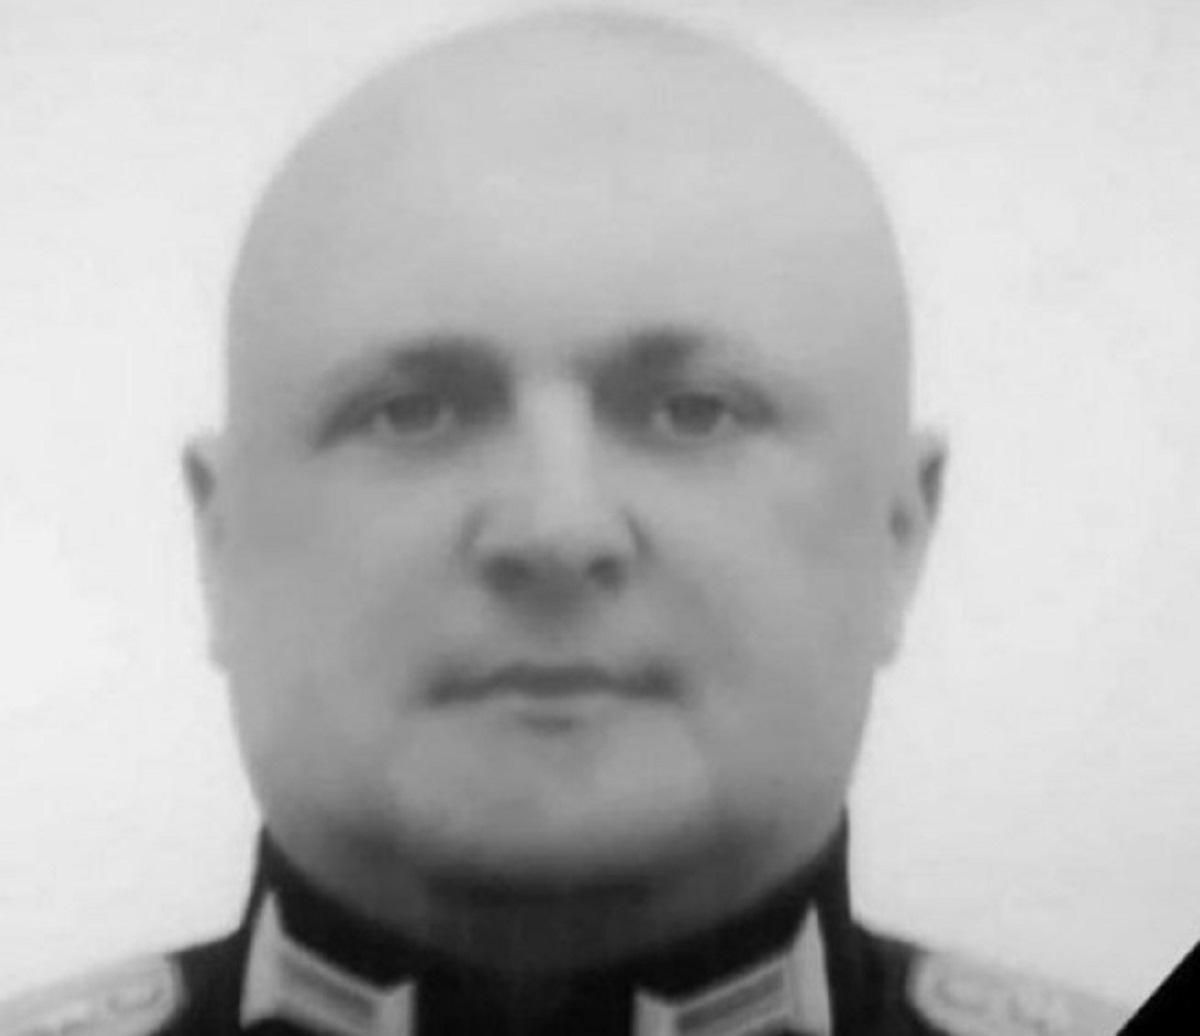 ВСУ ликвидировали командира мотострелкового полка России Юрия Агаркова